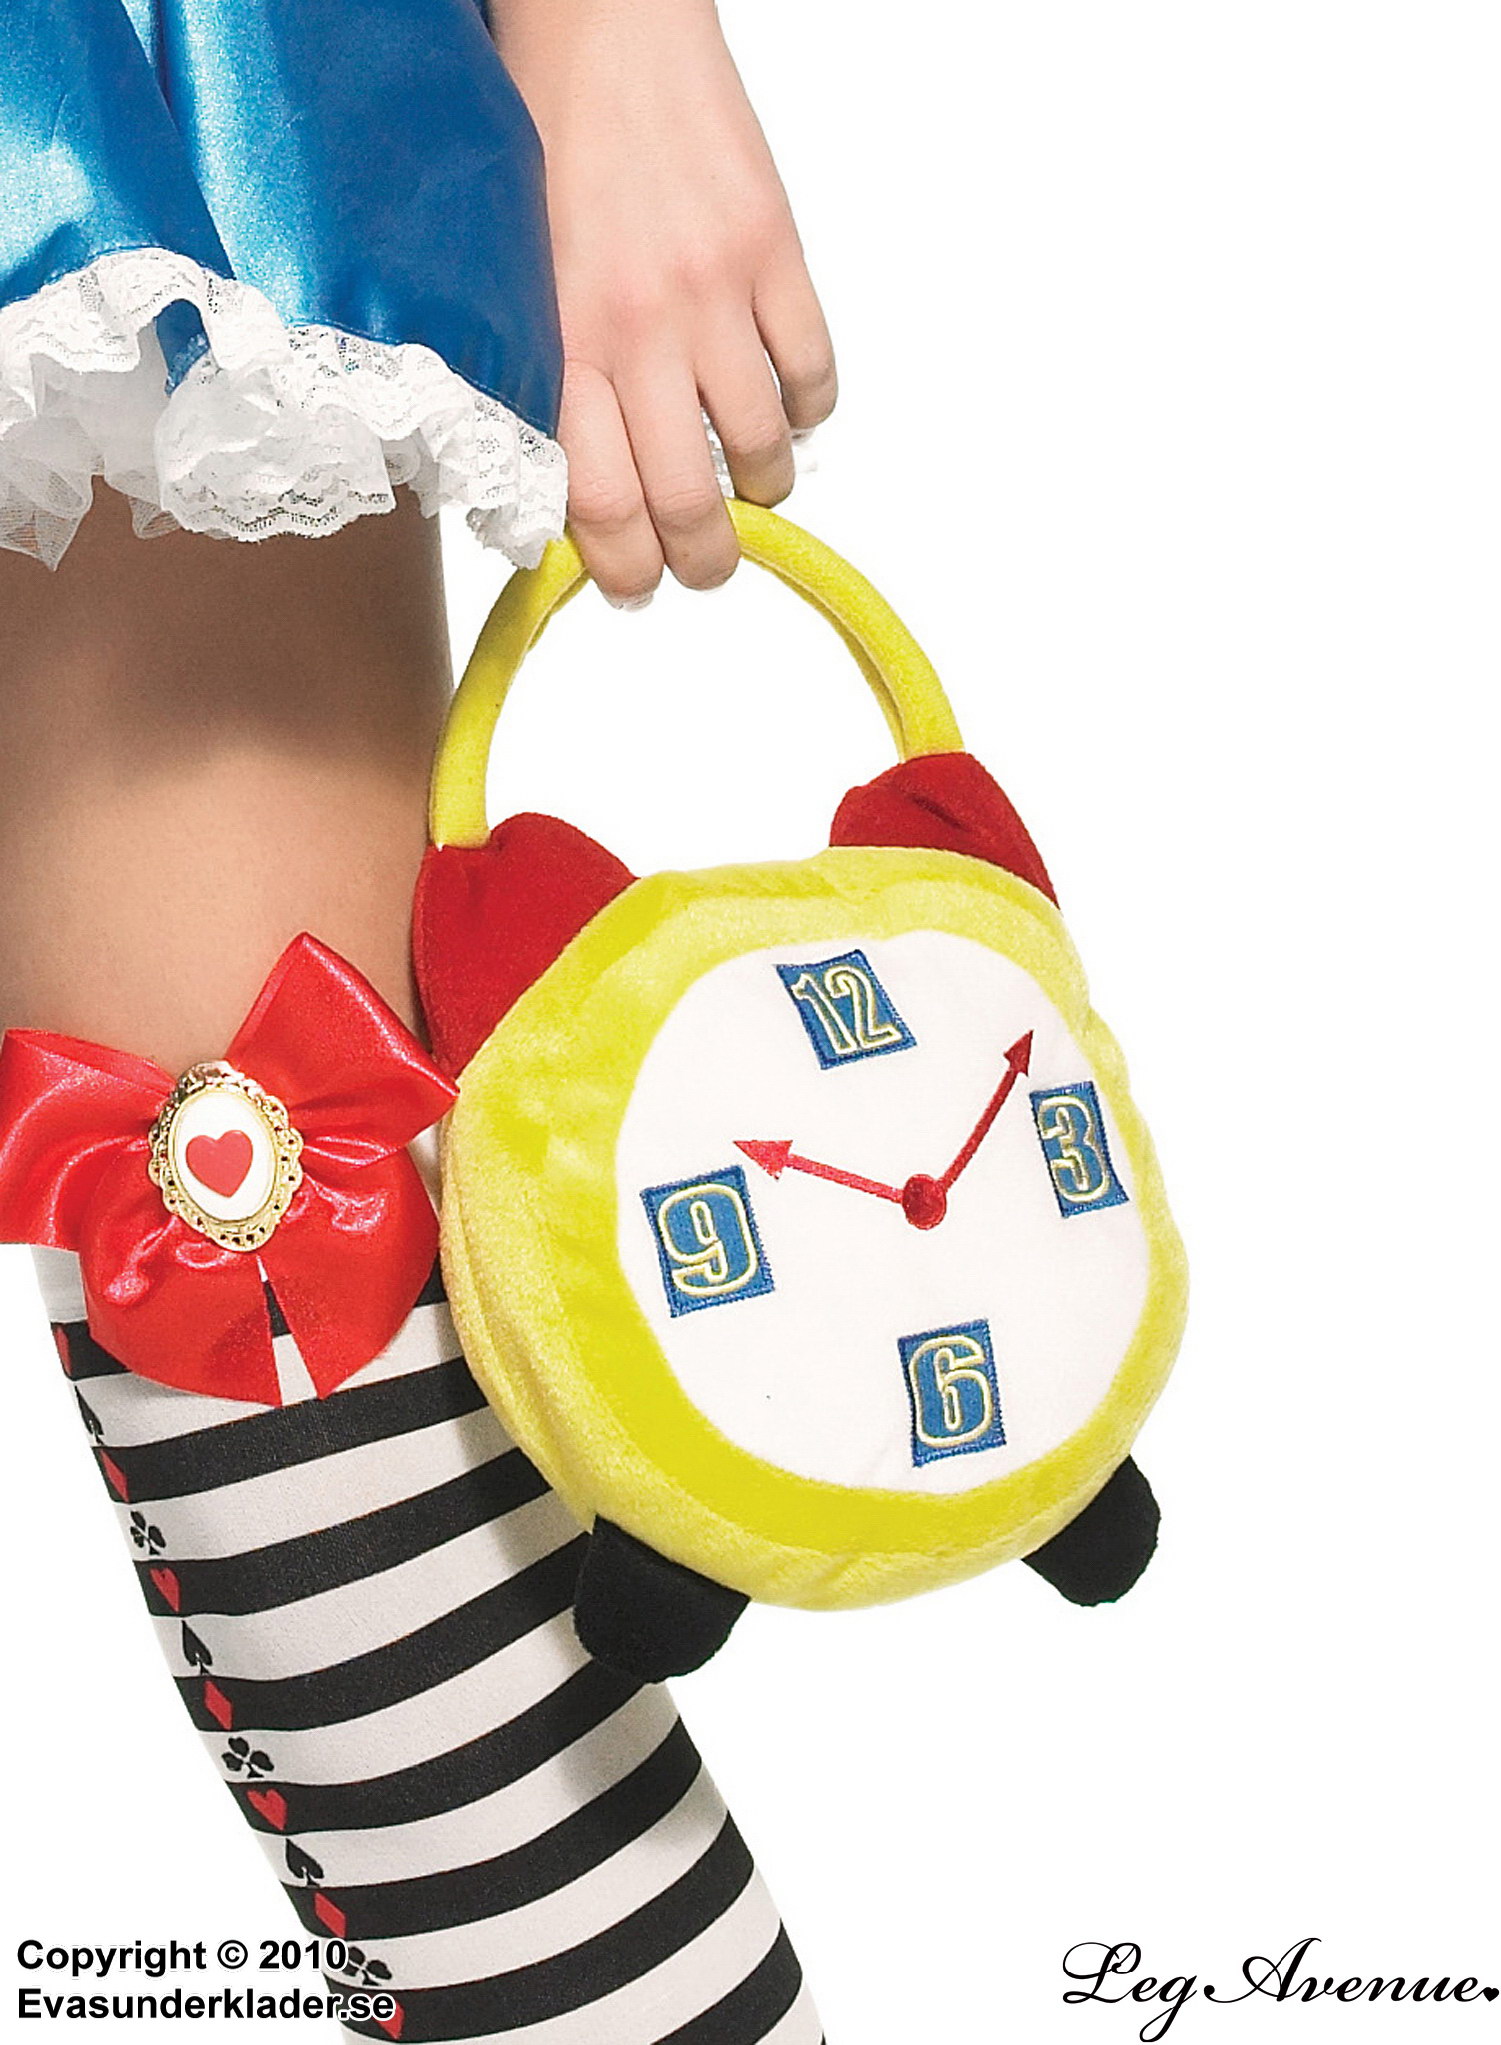 Crazy hour alarm clock purse